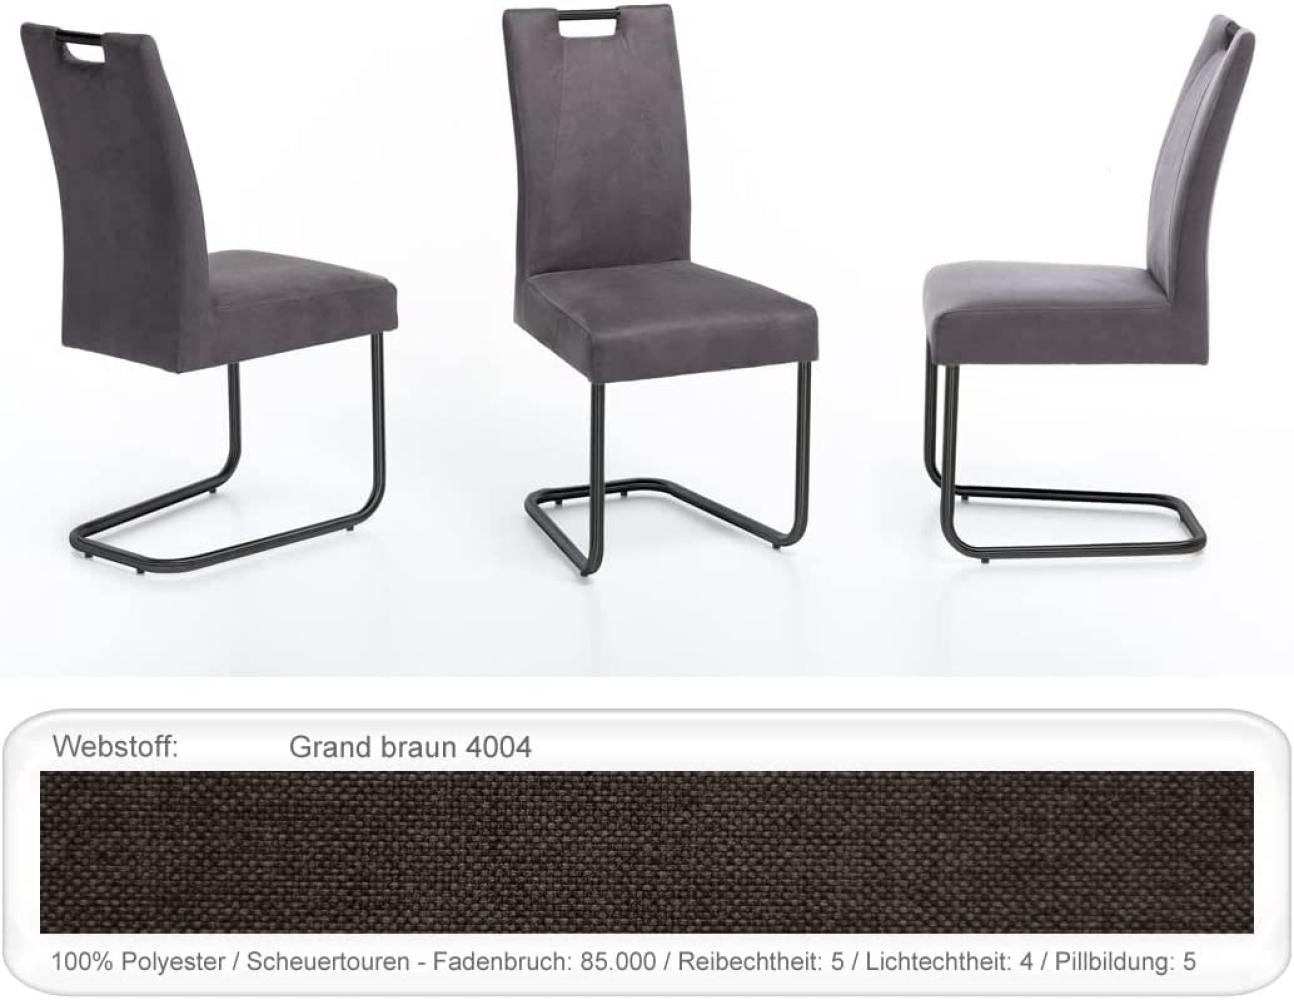 4x Schwingstuhl Kato Griff Gestell schwarz Esszimmerstuhl Küchenstuhl Grand braun Bild 1